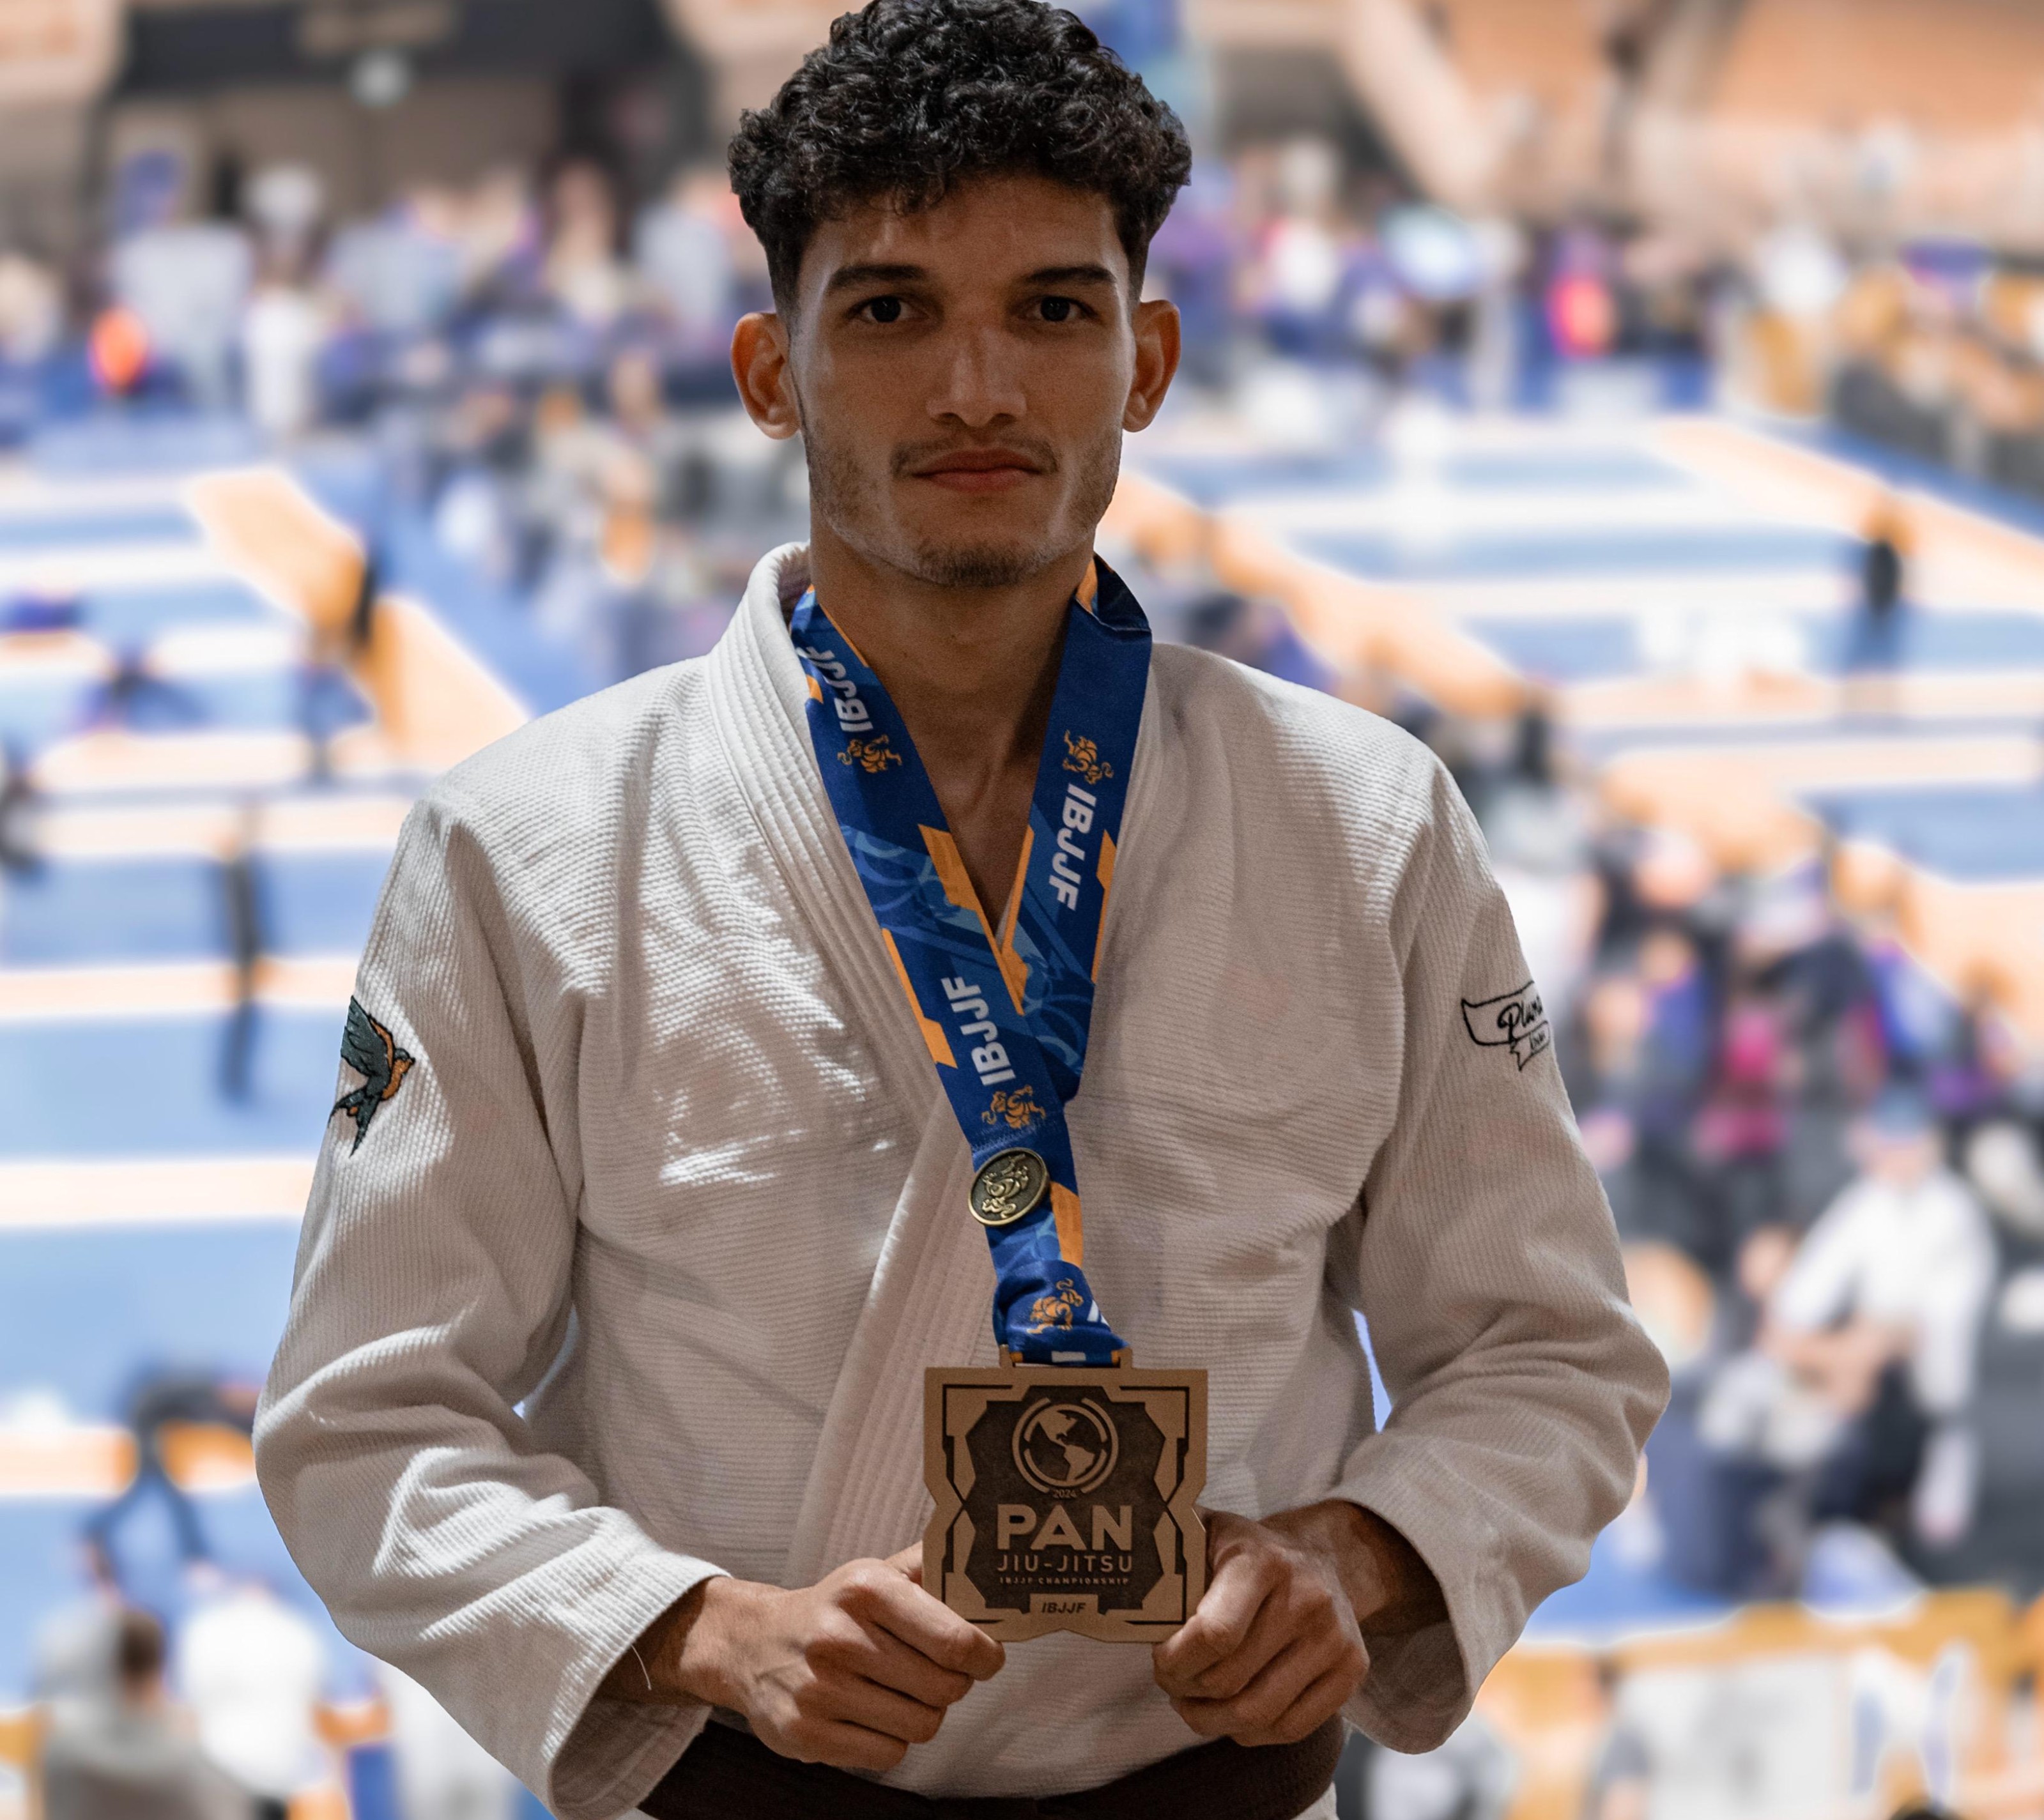 Andrew Cardoso conquista bronze no Pan-Americano de Jiu-jitsu nos EUA